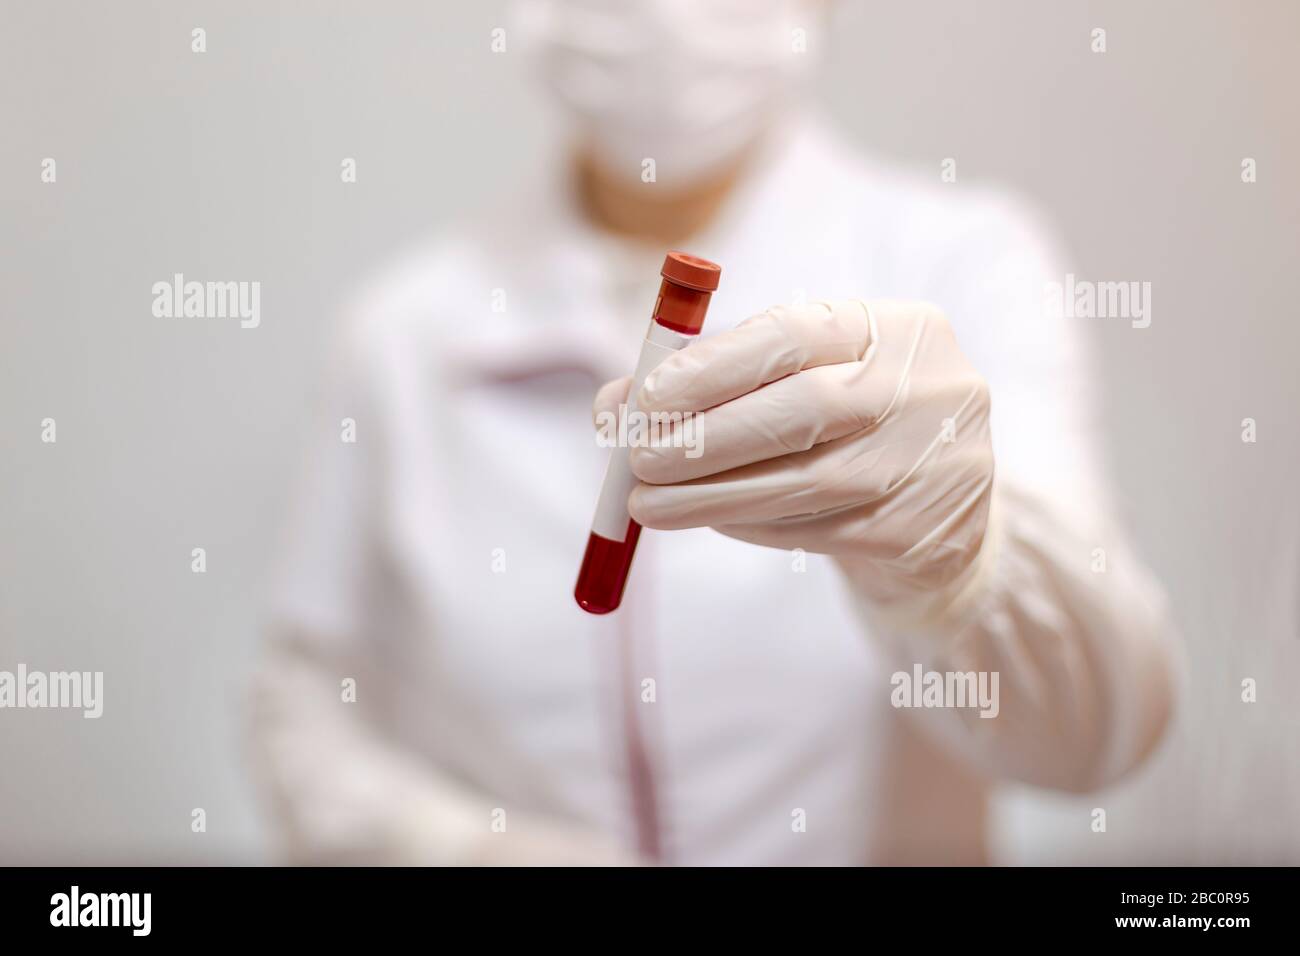 Arzt mit Maske und Handschuhen, der ein Rohr mit medizinischer Analyse, Blut und Textstelle enthält Stockfoto